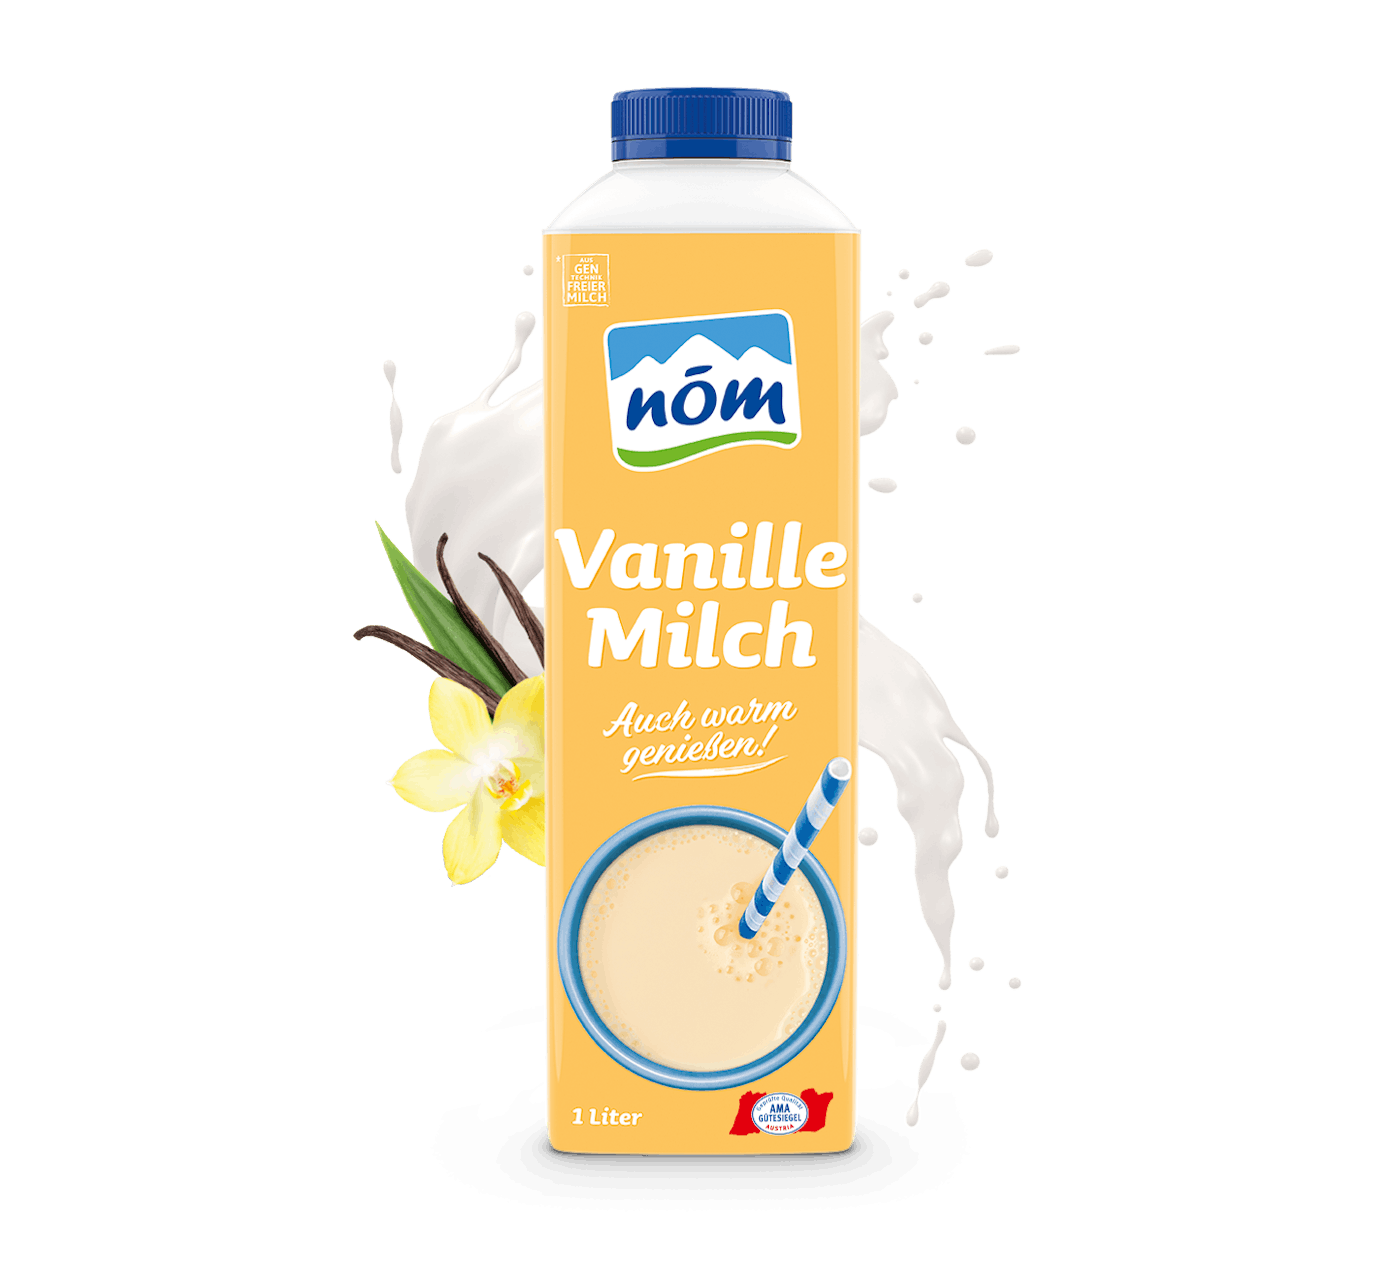 NÖM Vanillemilch in 1 Liter Tetra Pak mit Blumen